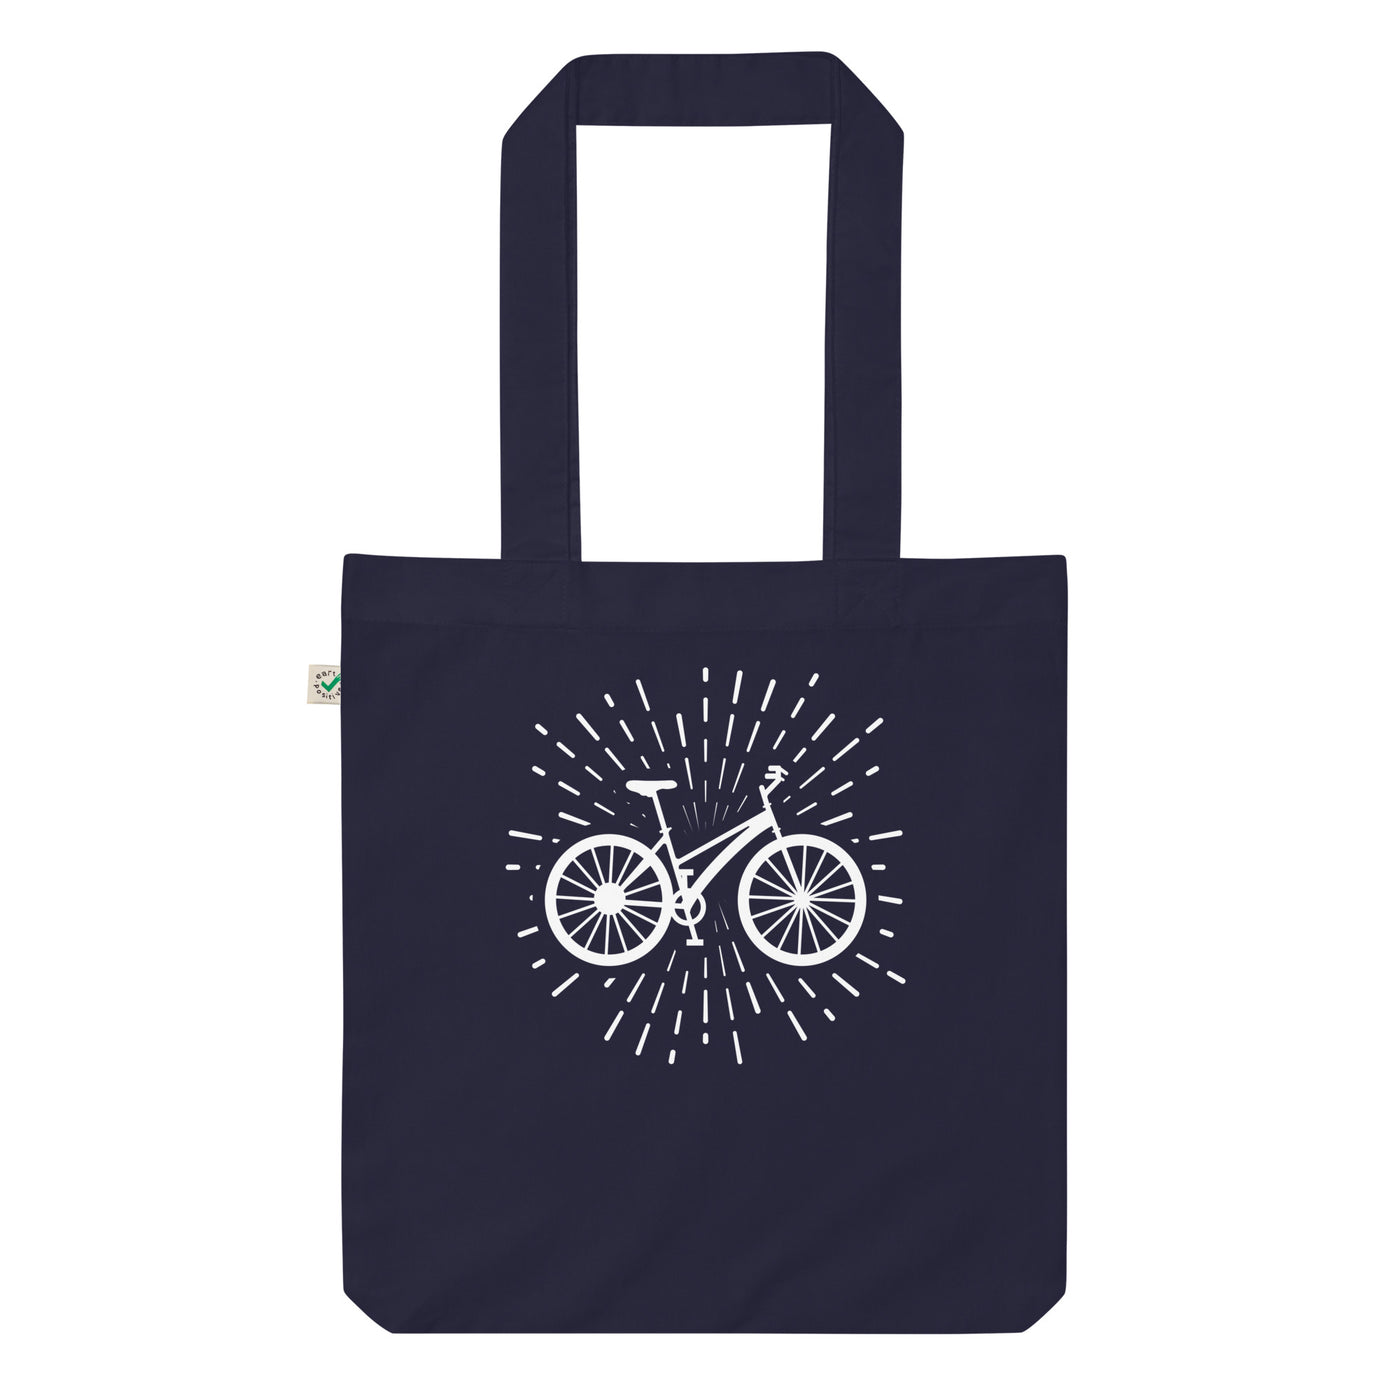 Feuerwerk Und Radfahren - Organic Einkaufstasche fahrrad Navy